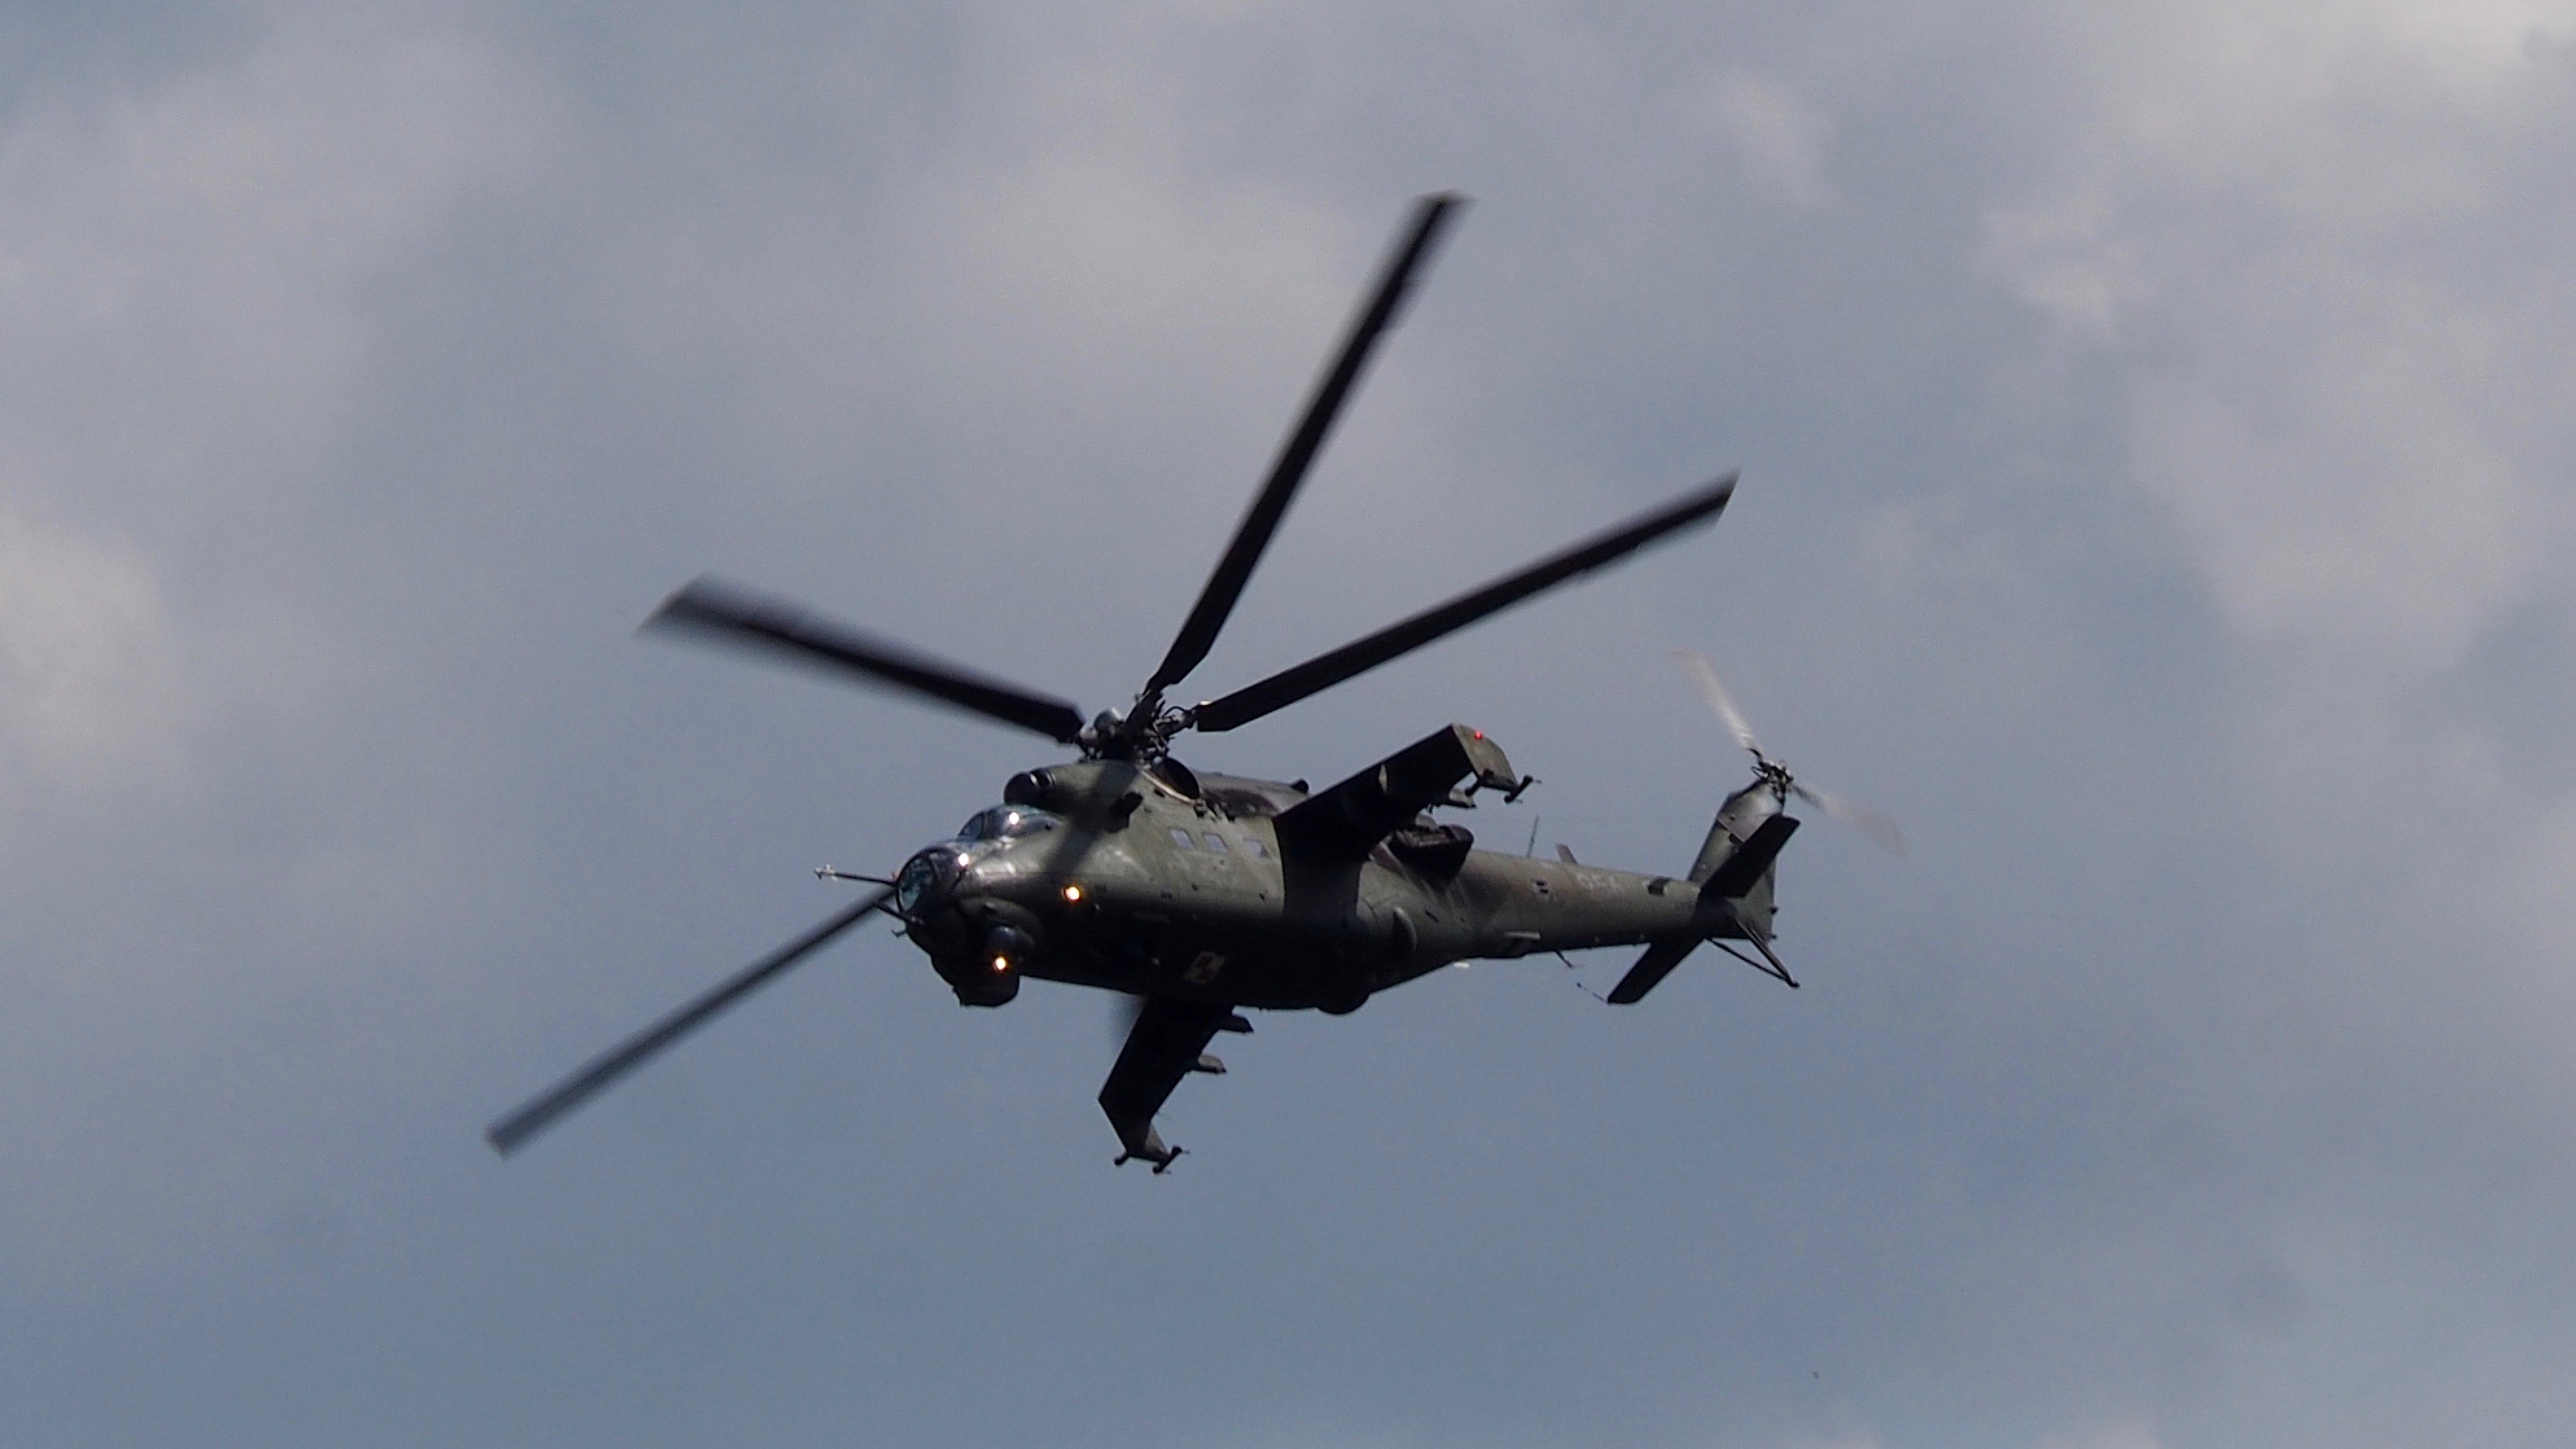 Śmigłowce Mi-24W mogą się dobrze prezentować na pokazach, ale ich możliwości bojowe są bardzo ograniczone. Fot. J.Sabak